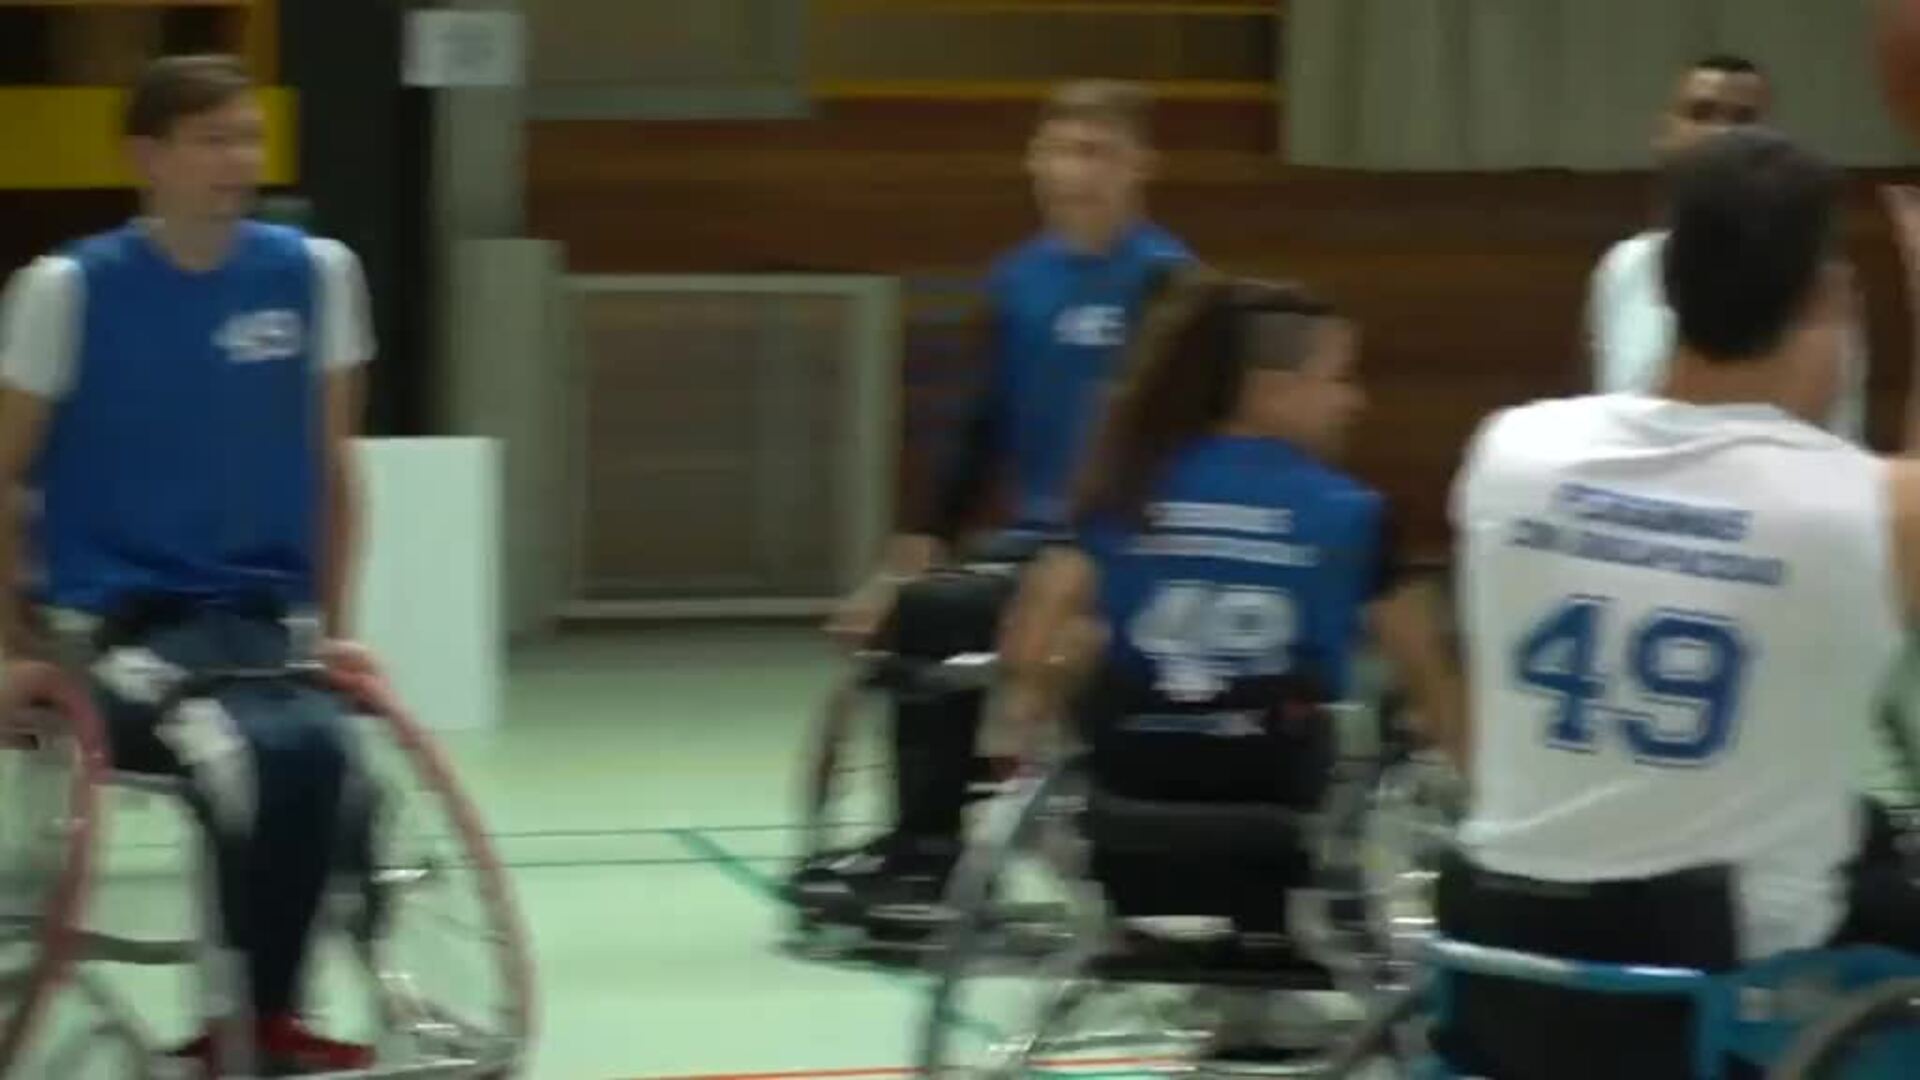 Sánchez juega un partido de baloncesto en silla de ruedas